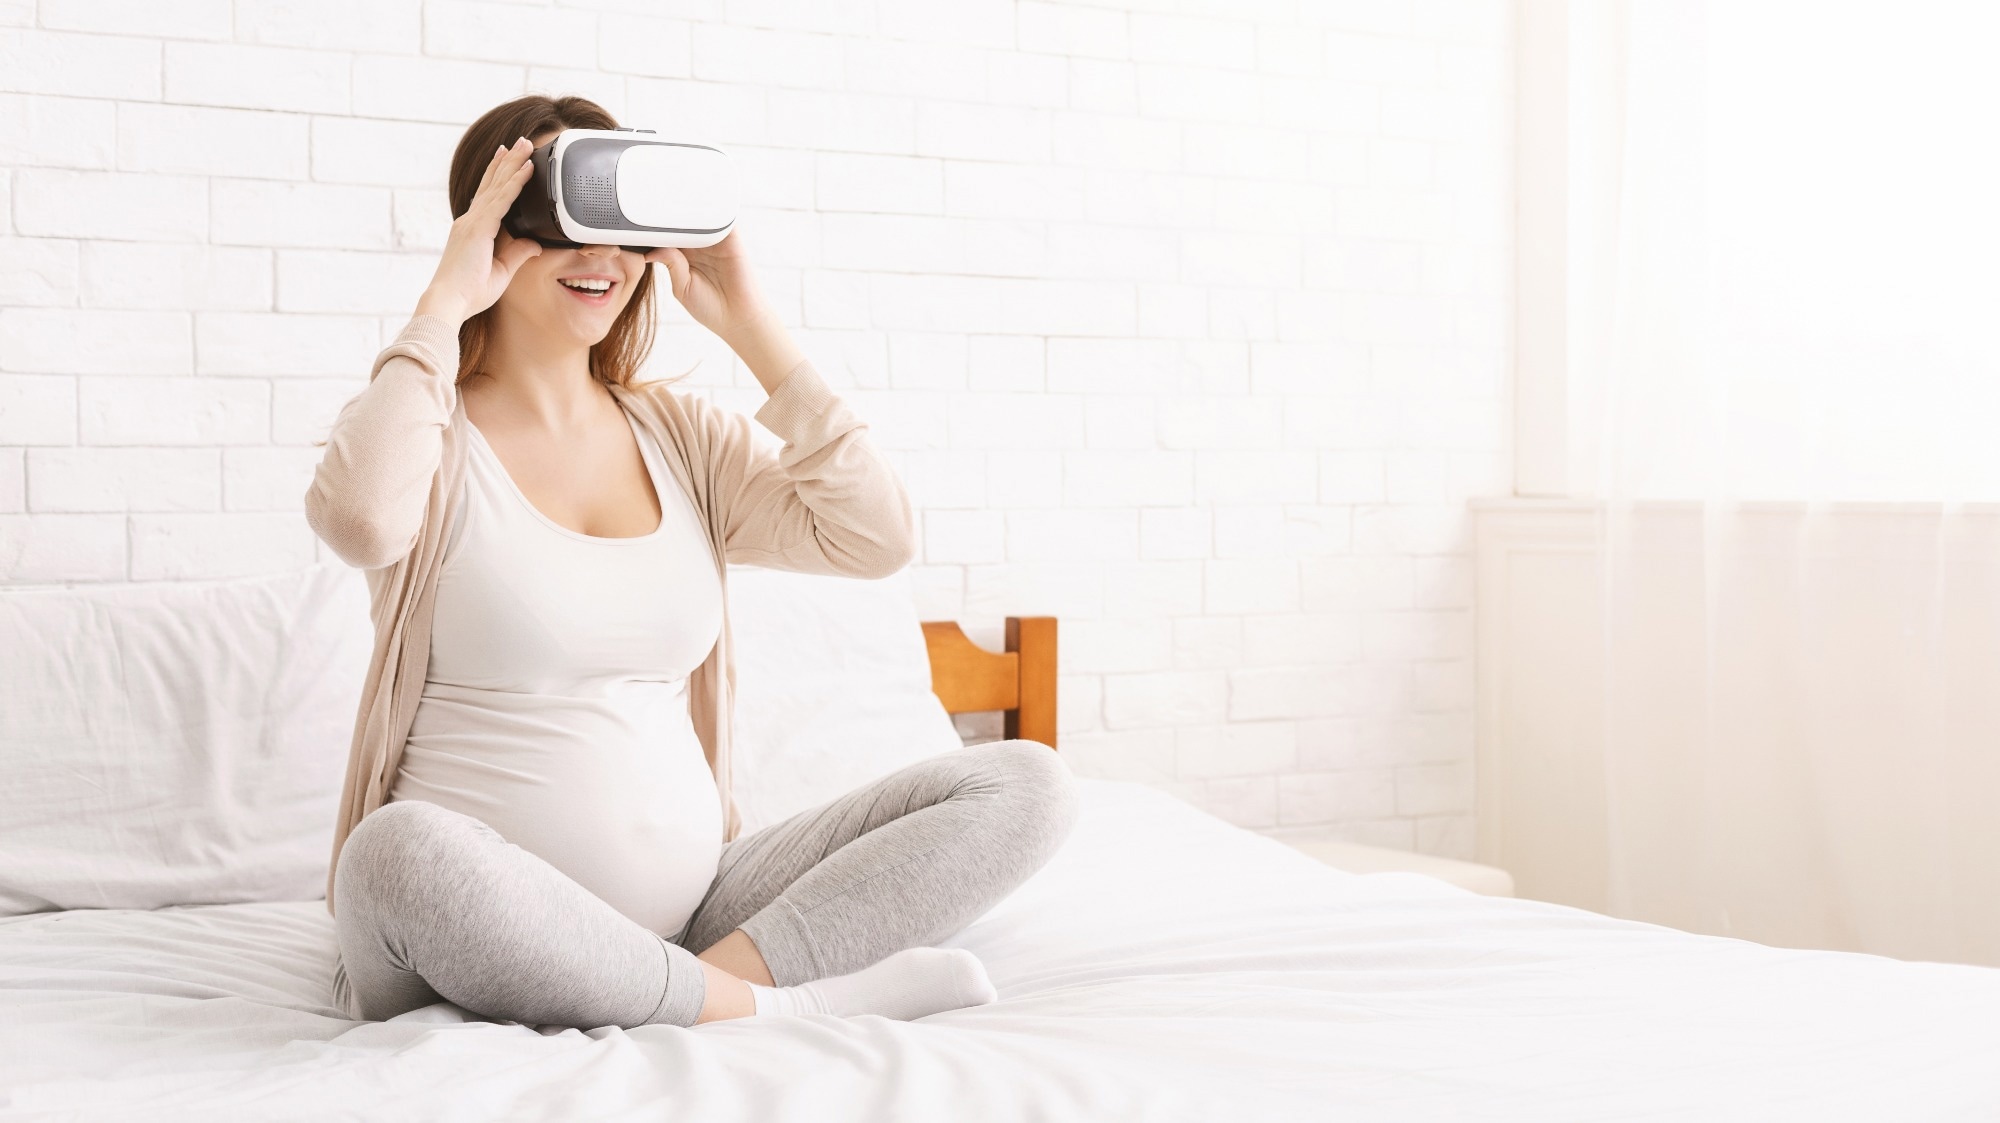 Badanie: „Poród na plaży”: doświadczenia kobiet związane z wykorzystaniem wirtualnej rzeczywistości podczas porodu.  Źródło zdjęcia: Prostock-studio / Shutterstock.com